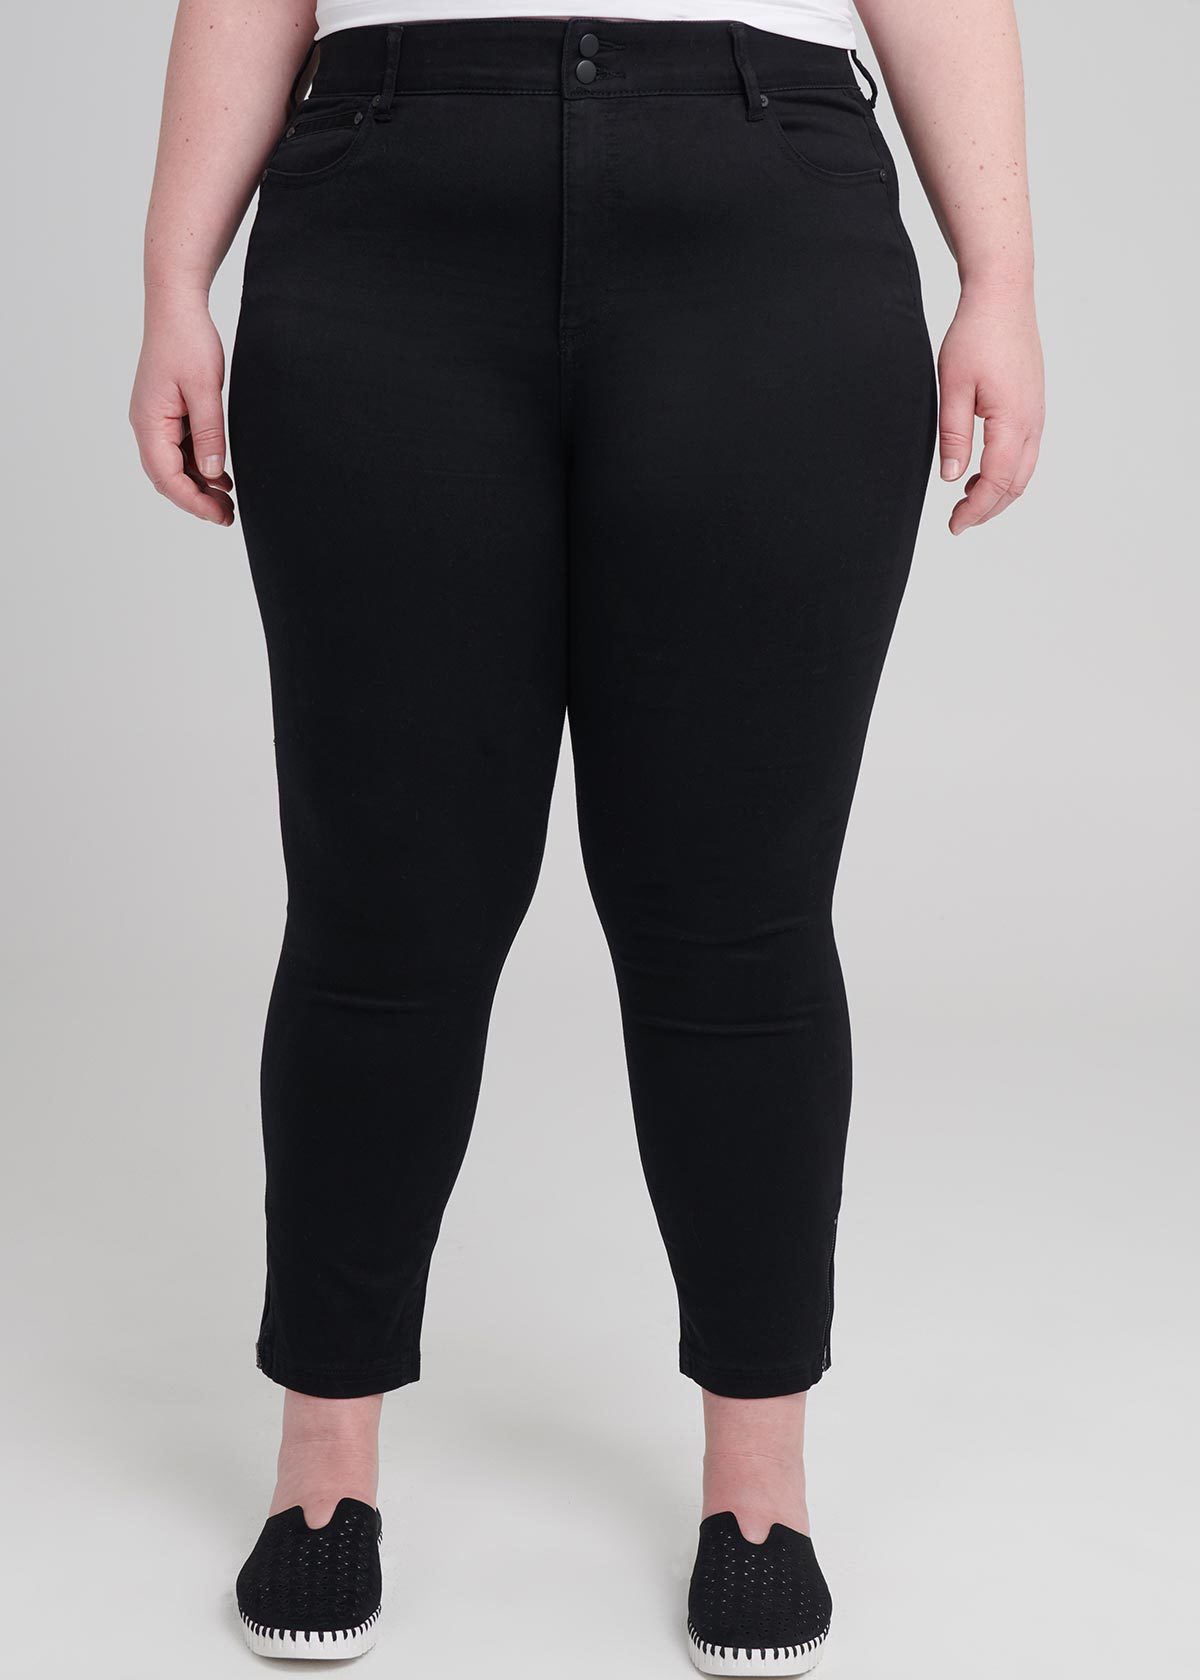 Tall Luxe Looker Zip Jean in Black, Sizes 12-30 | Taking Shape NZ